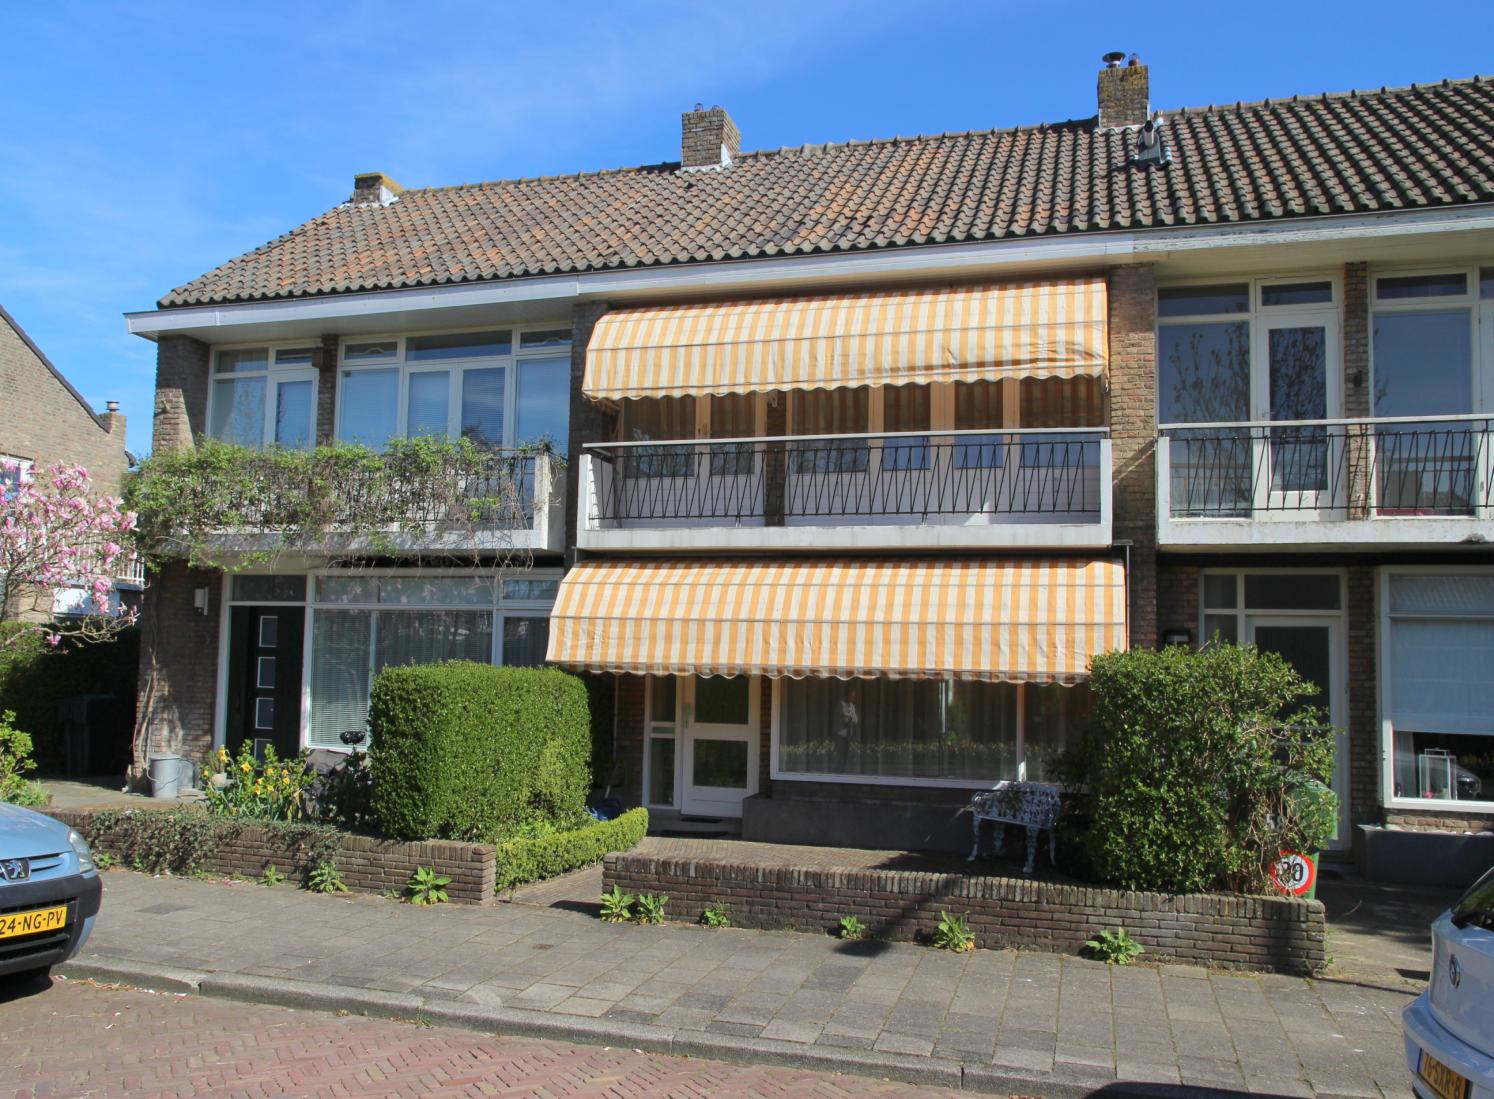 Juliana van Stolberglaan 60 Voorschoten Vraagprijs: 394.000 k.k. TE KOOP Sfeervolle uitgebouwde gezinswoning aan mooie laan in de populaire Oranjewijk.